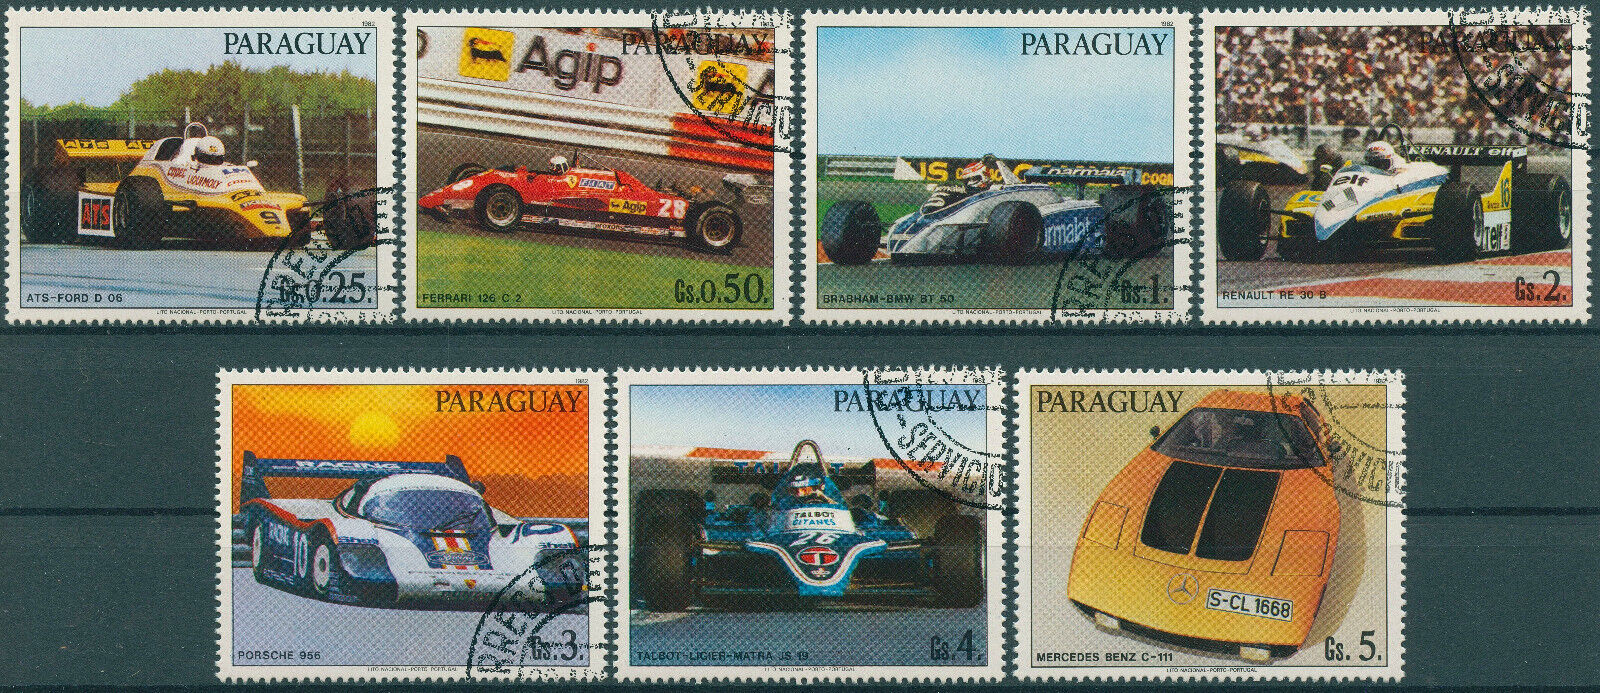 Paraguay 1983 CTO Racing Cars Stamps Porsche Ferrari BMW Mercedes Benz 7v Set